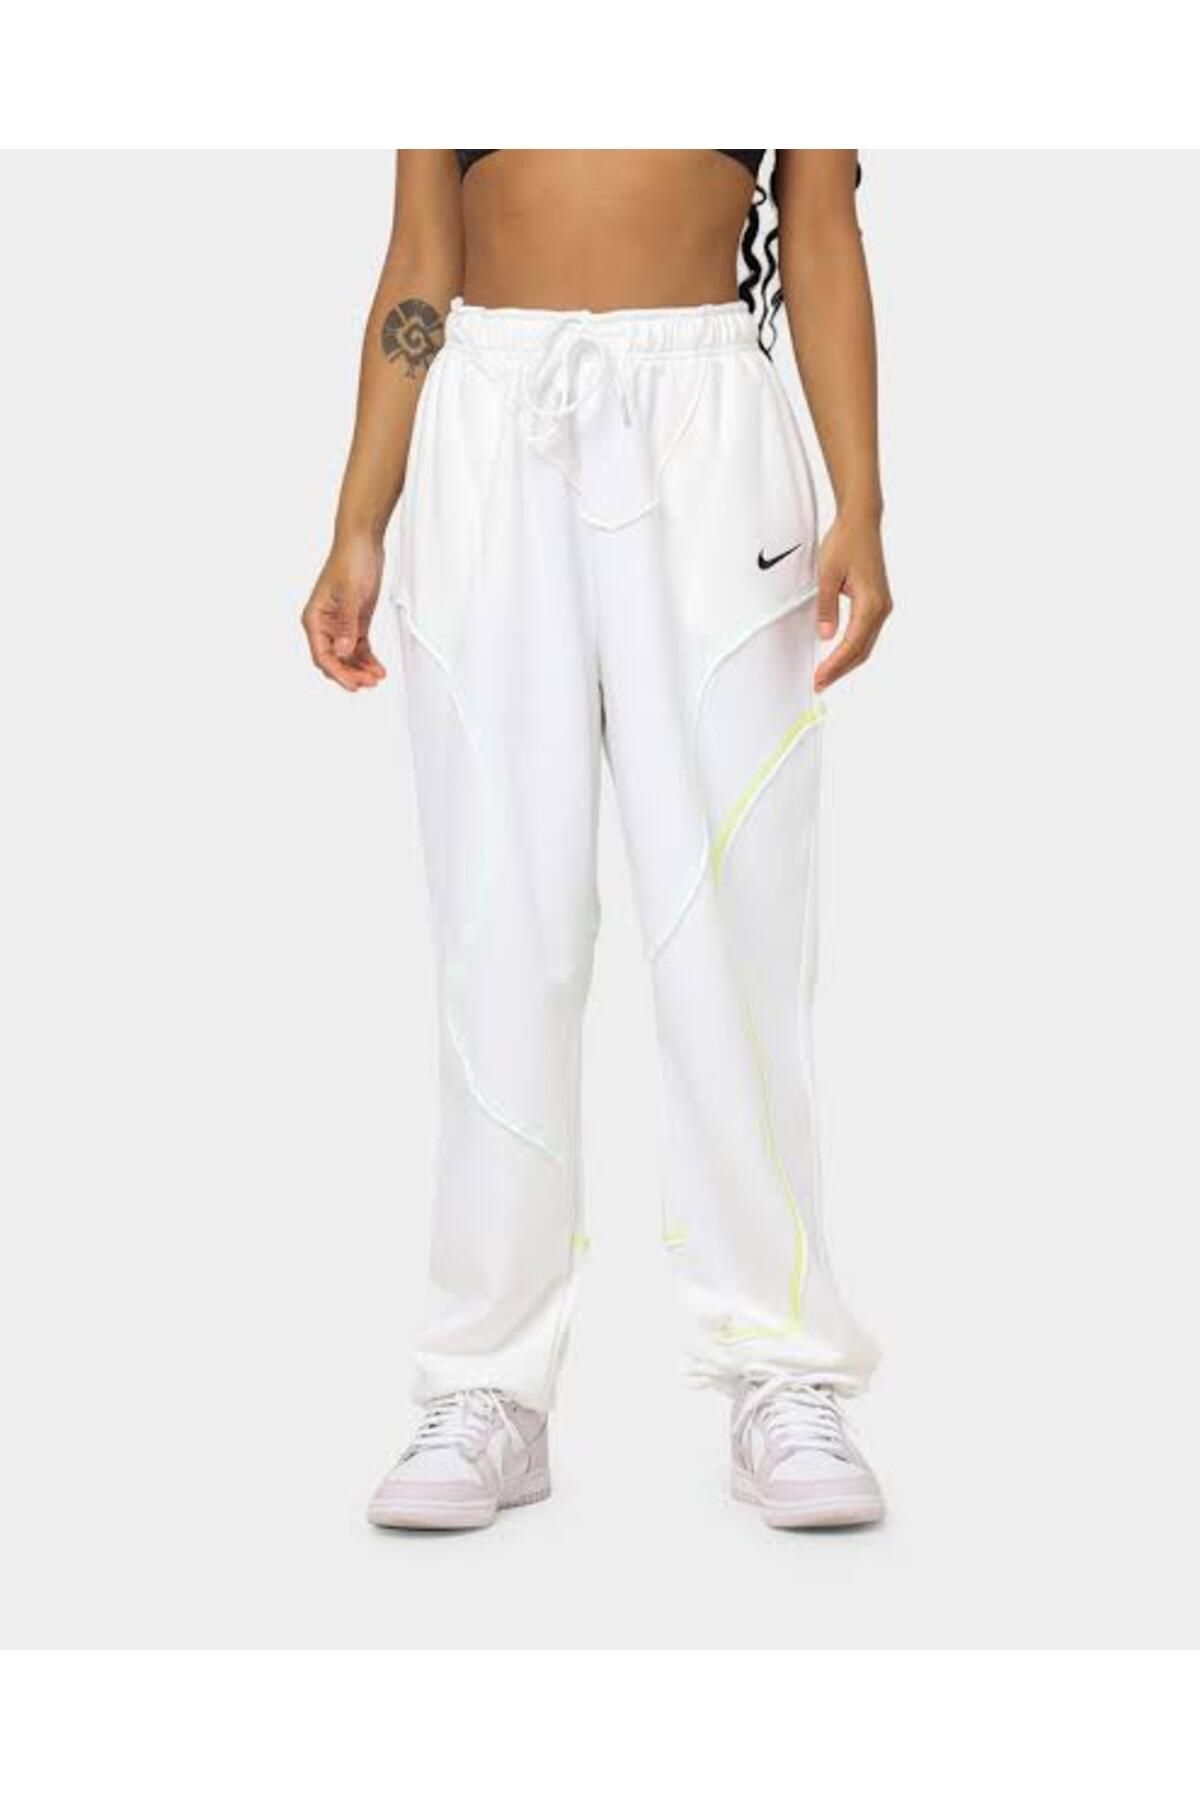 Nike Sportswear Fleece Swirl Oversized bol kesim Kadın Eşofman Altı stilim spor